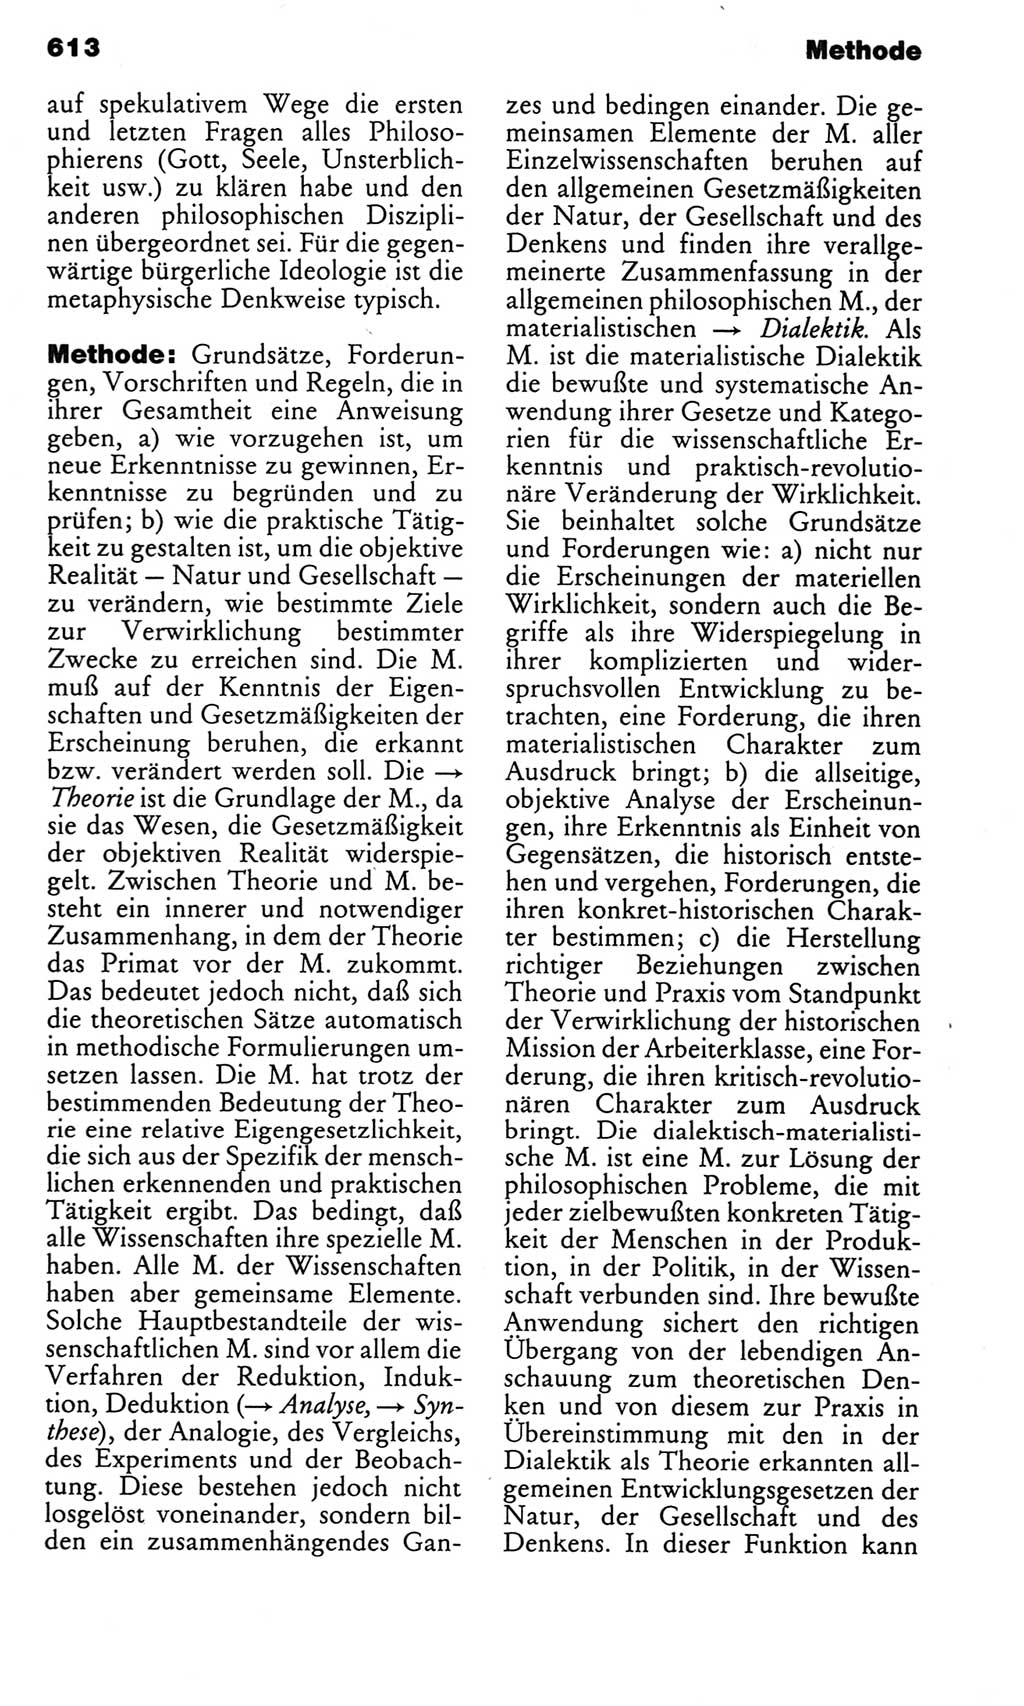 Kleines politisches Wörterbuch [Deutsche Demokratische Republik (DDR)] 1983, Seite 613 (Kl. pol. Wb. DDR 1983, S. 613)